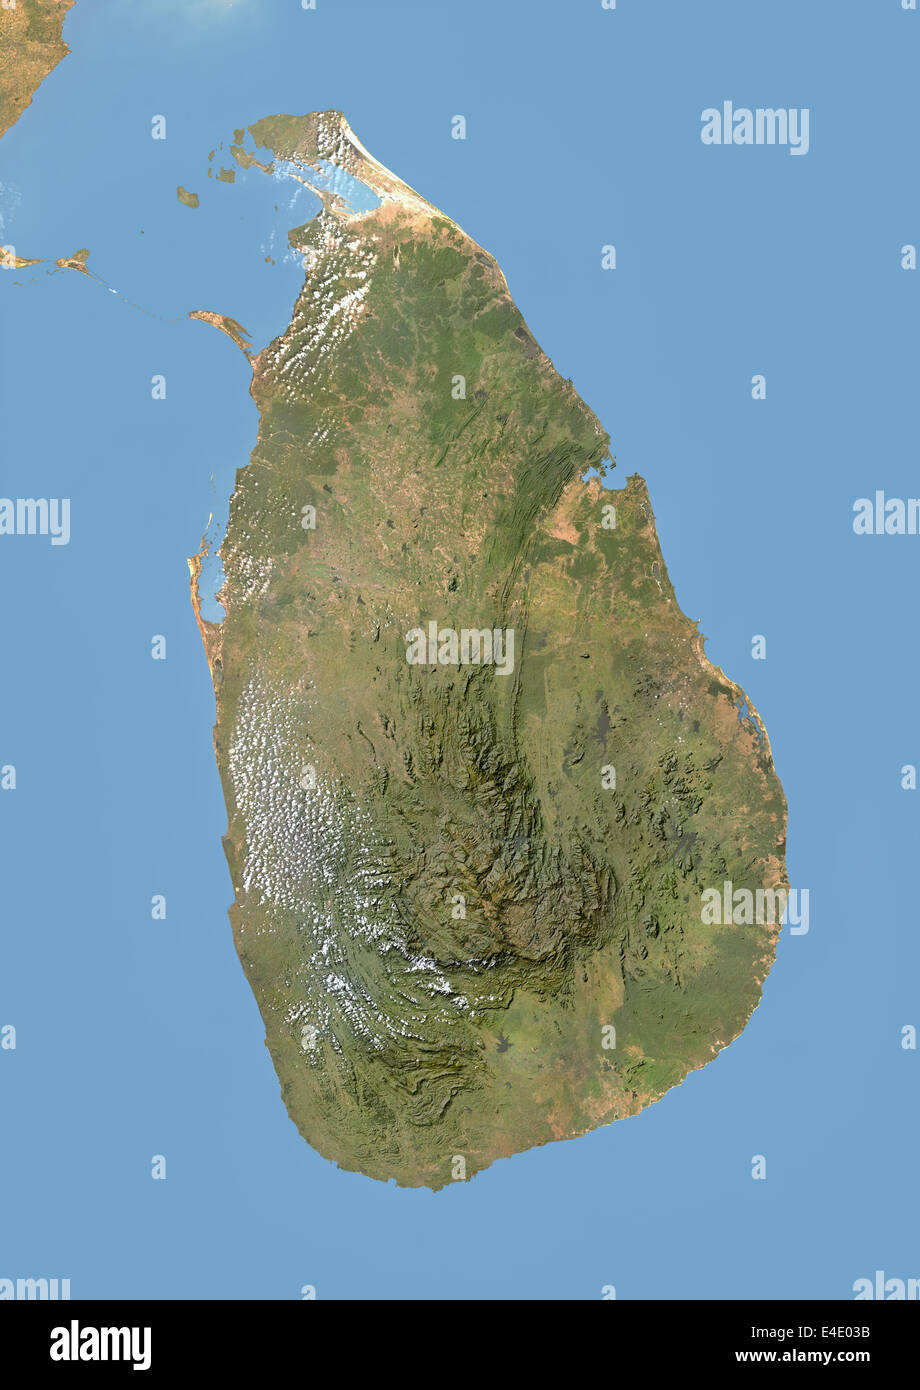 Sri Lanka, image satellite avec effet de choc Banque D'Images